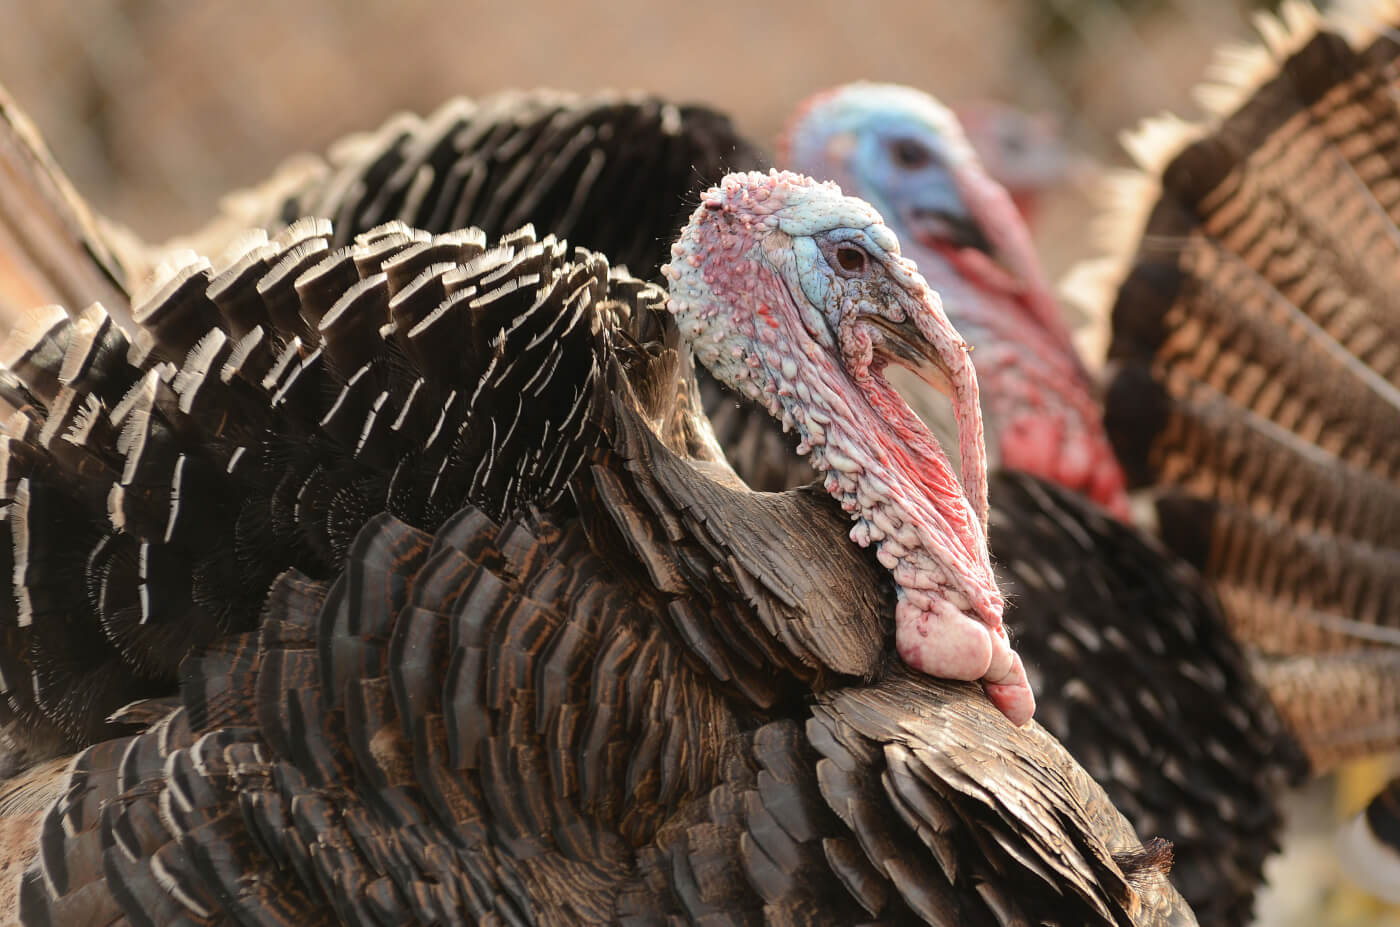 35 Whole foods turkey abuse